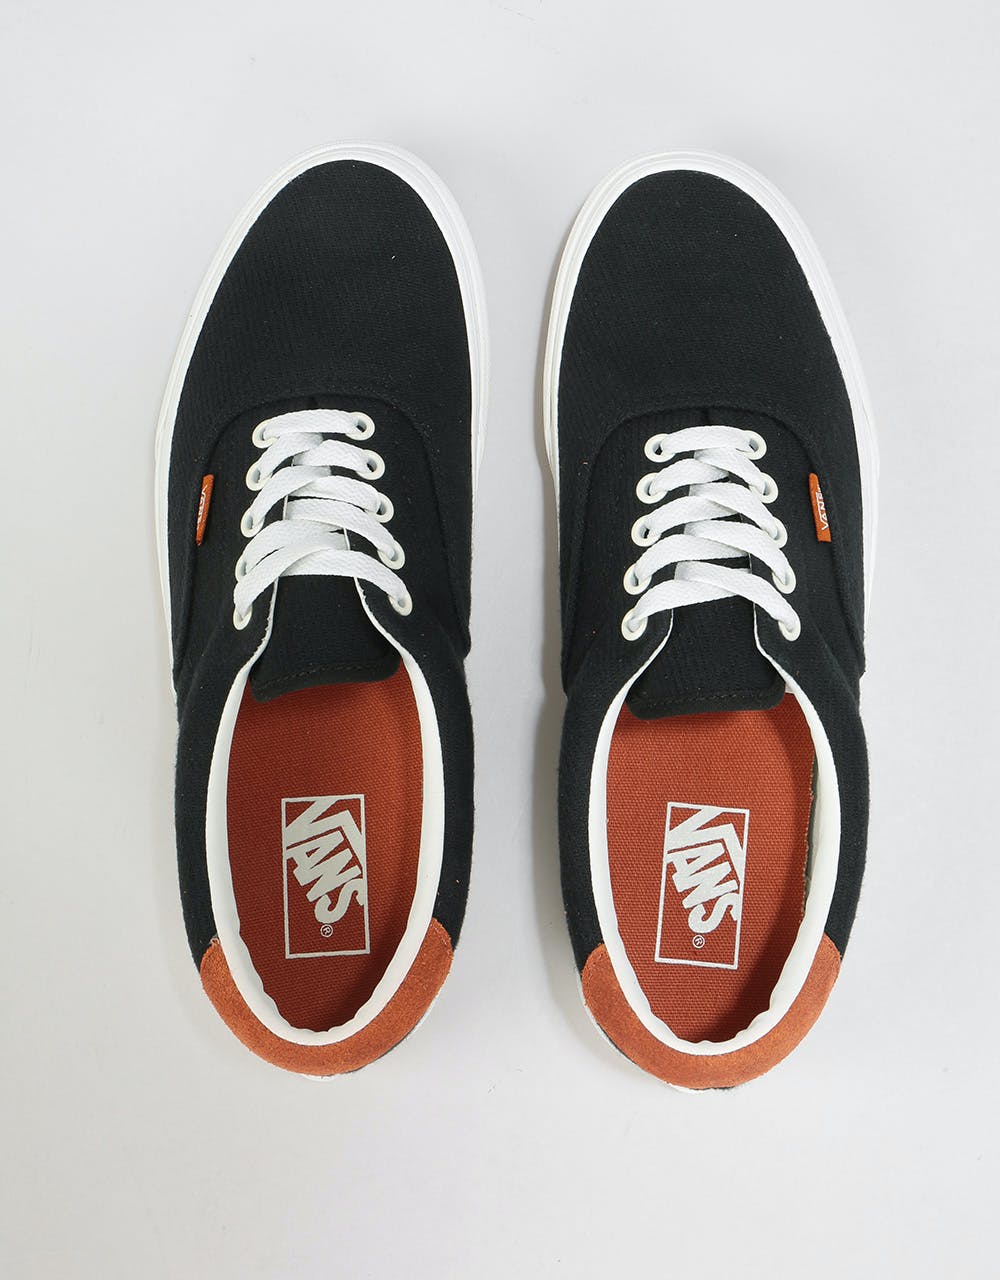 Vans Era 59 Skate Shoes - (Flannel) Black